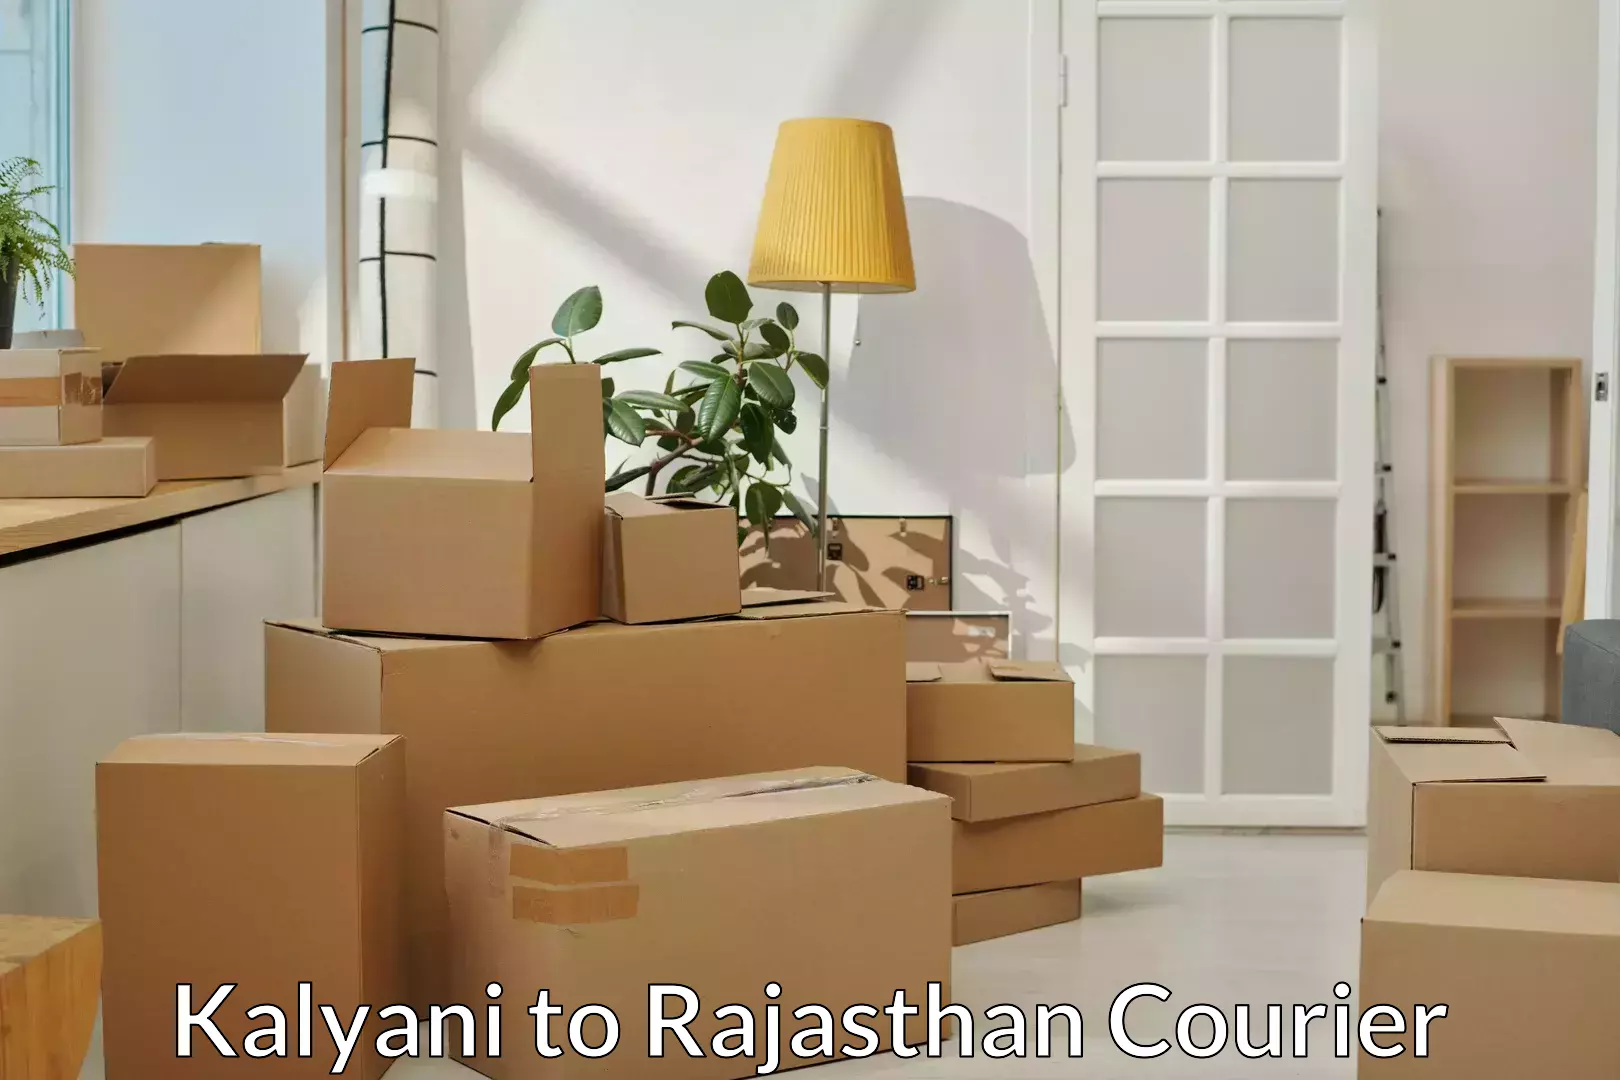 Furniture transport professionals Kalyani to Tonk